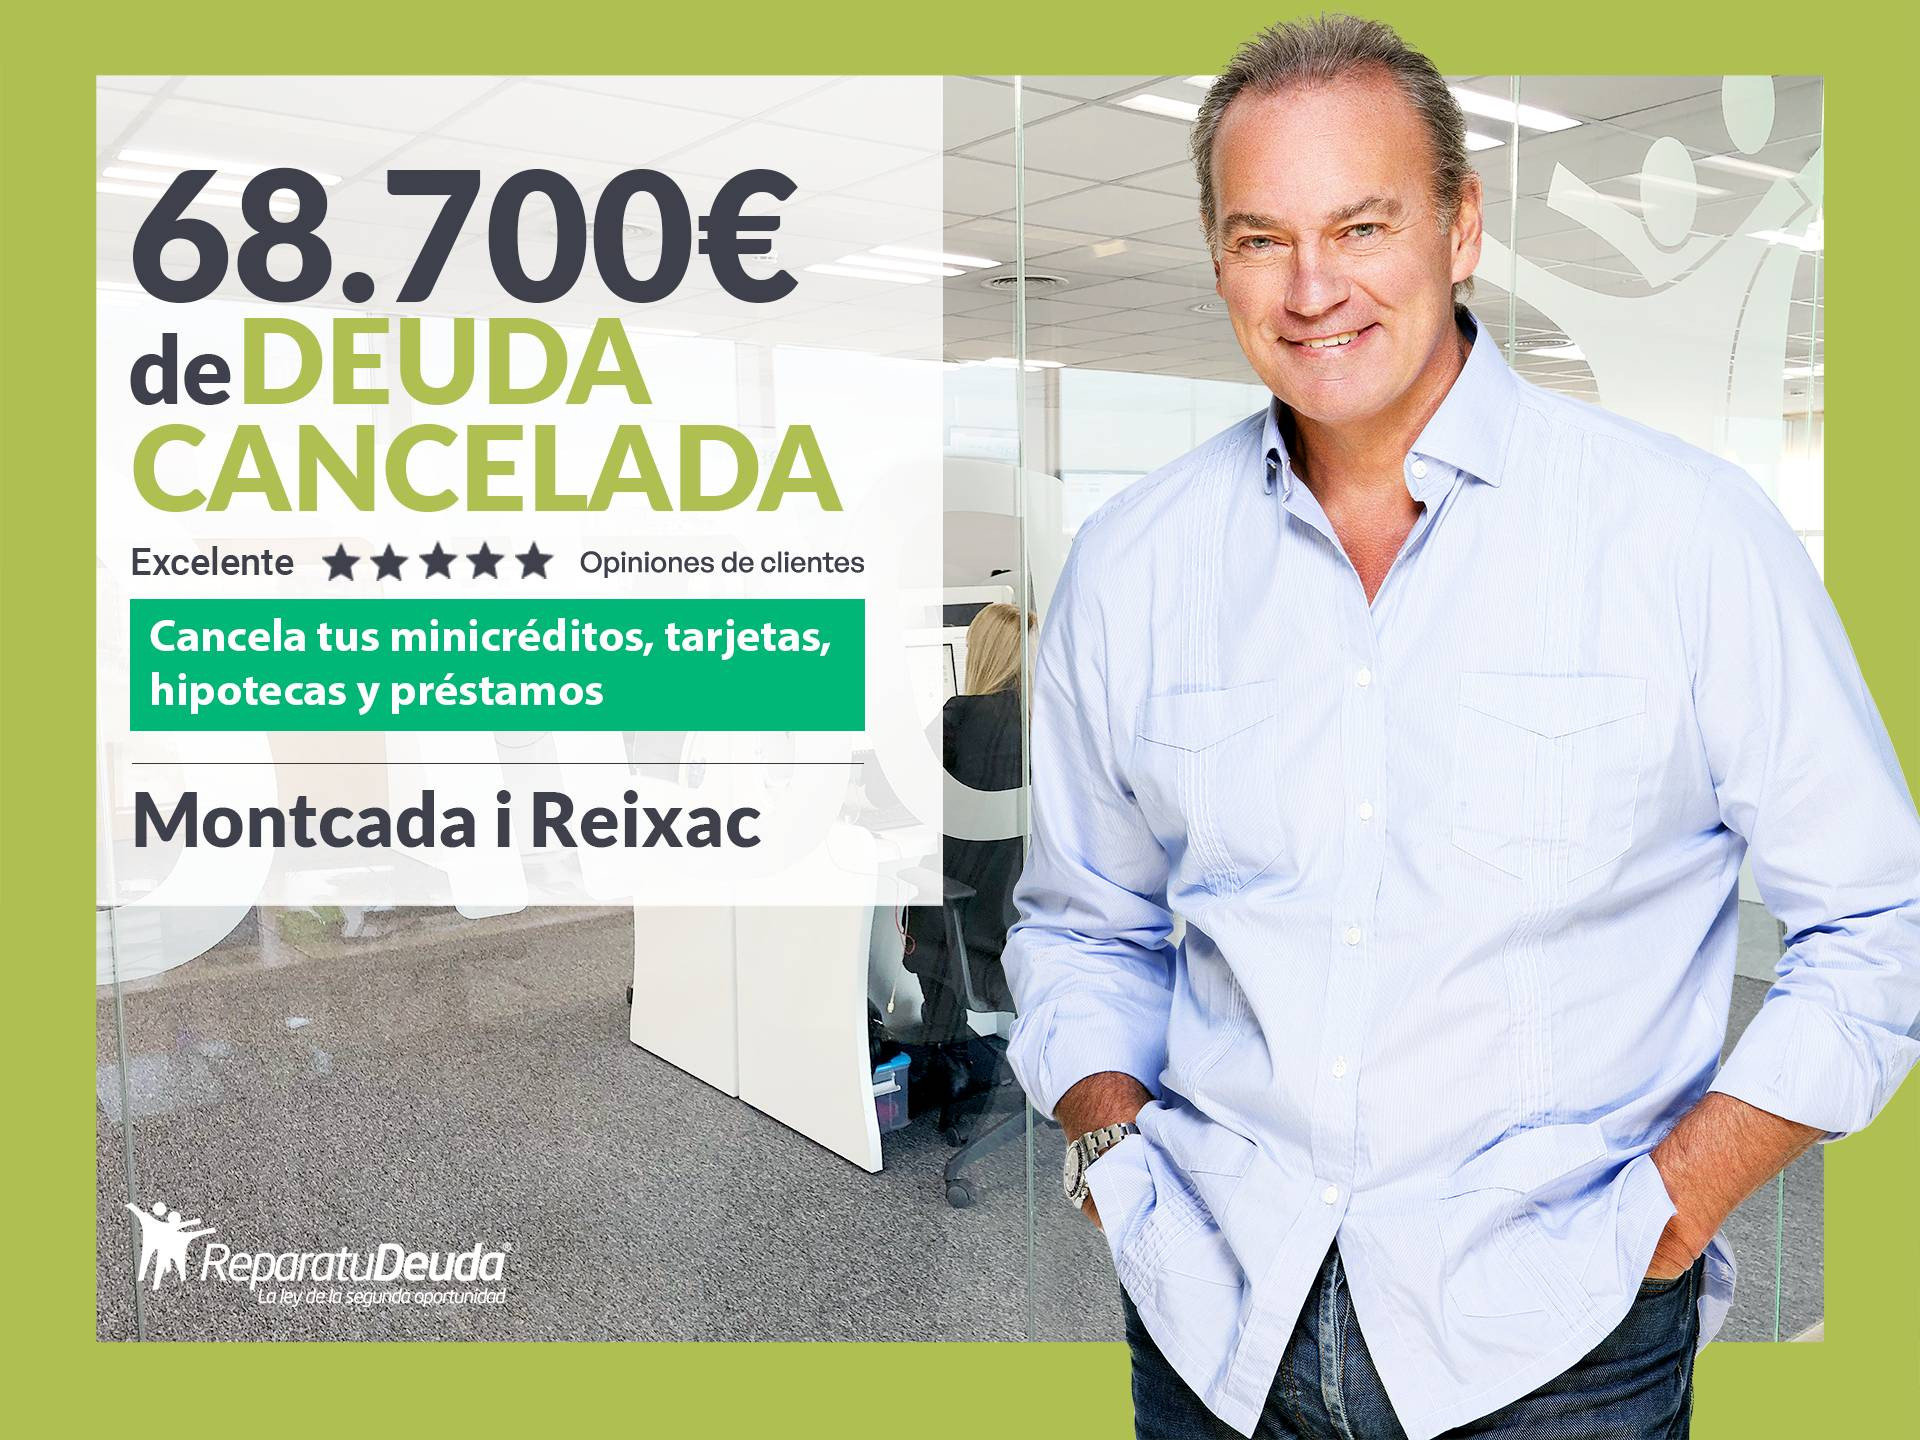  Repara tu Deuda Abogados cancela 68.700€ en Montcada i Reixac (Barcelona) mediante la Ley de Segunda Oportunidad 